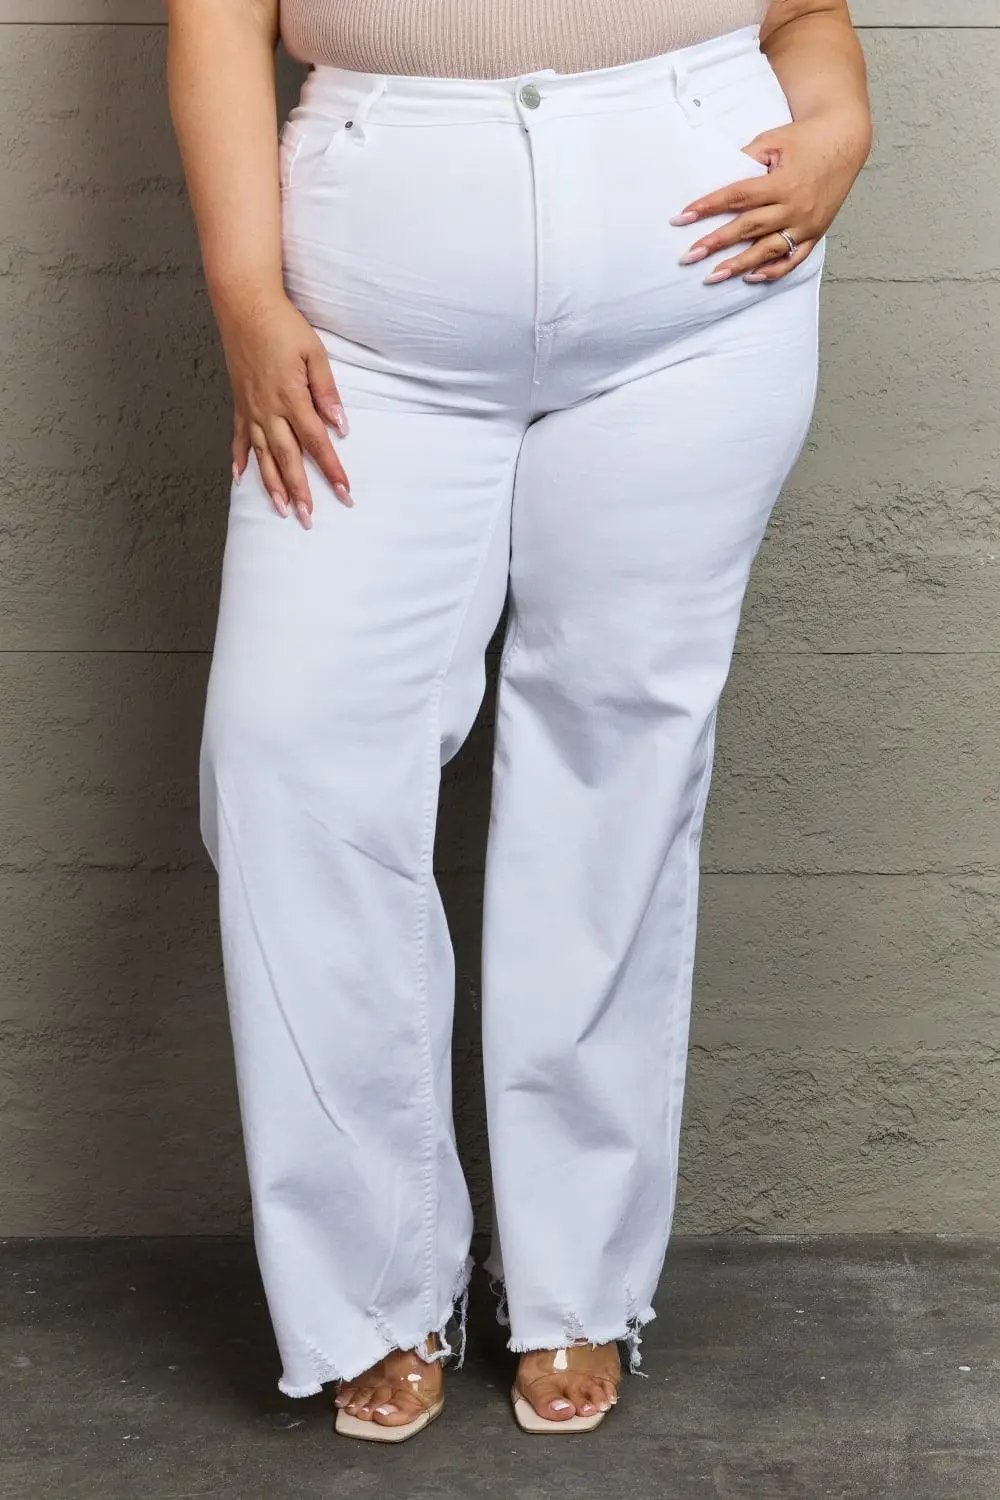 RISEN Raelene Full Size High Waist Wide Leg Jeans in White - The Swanky Bee